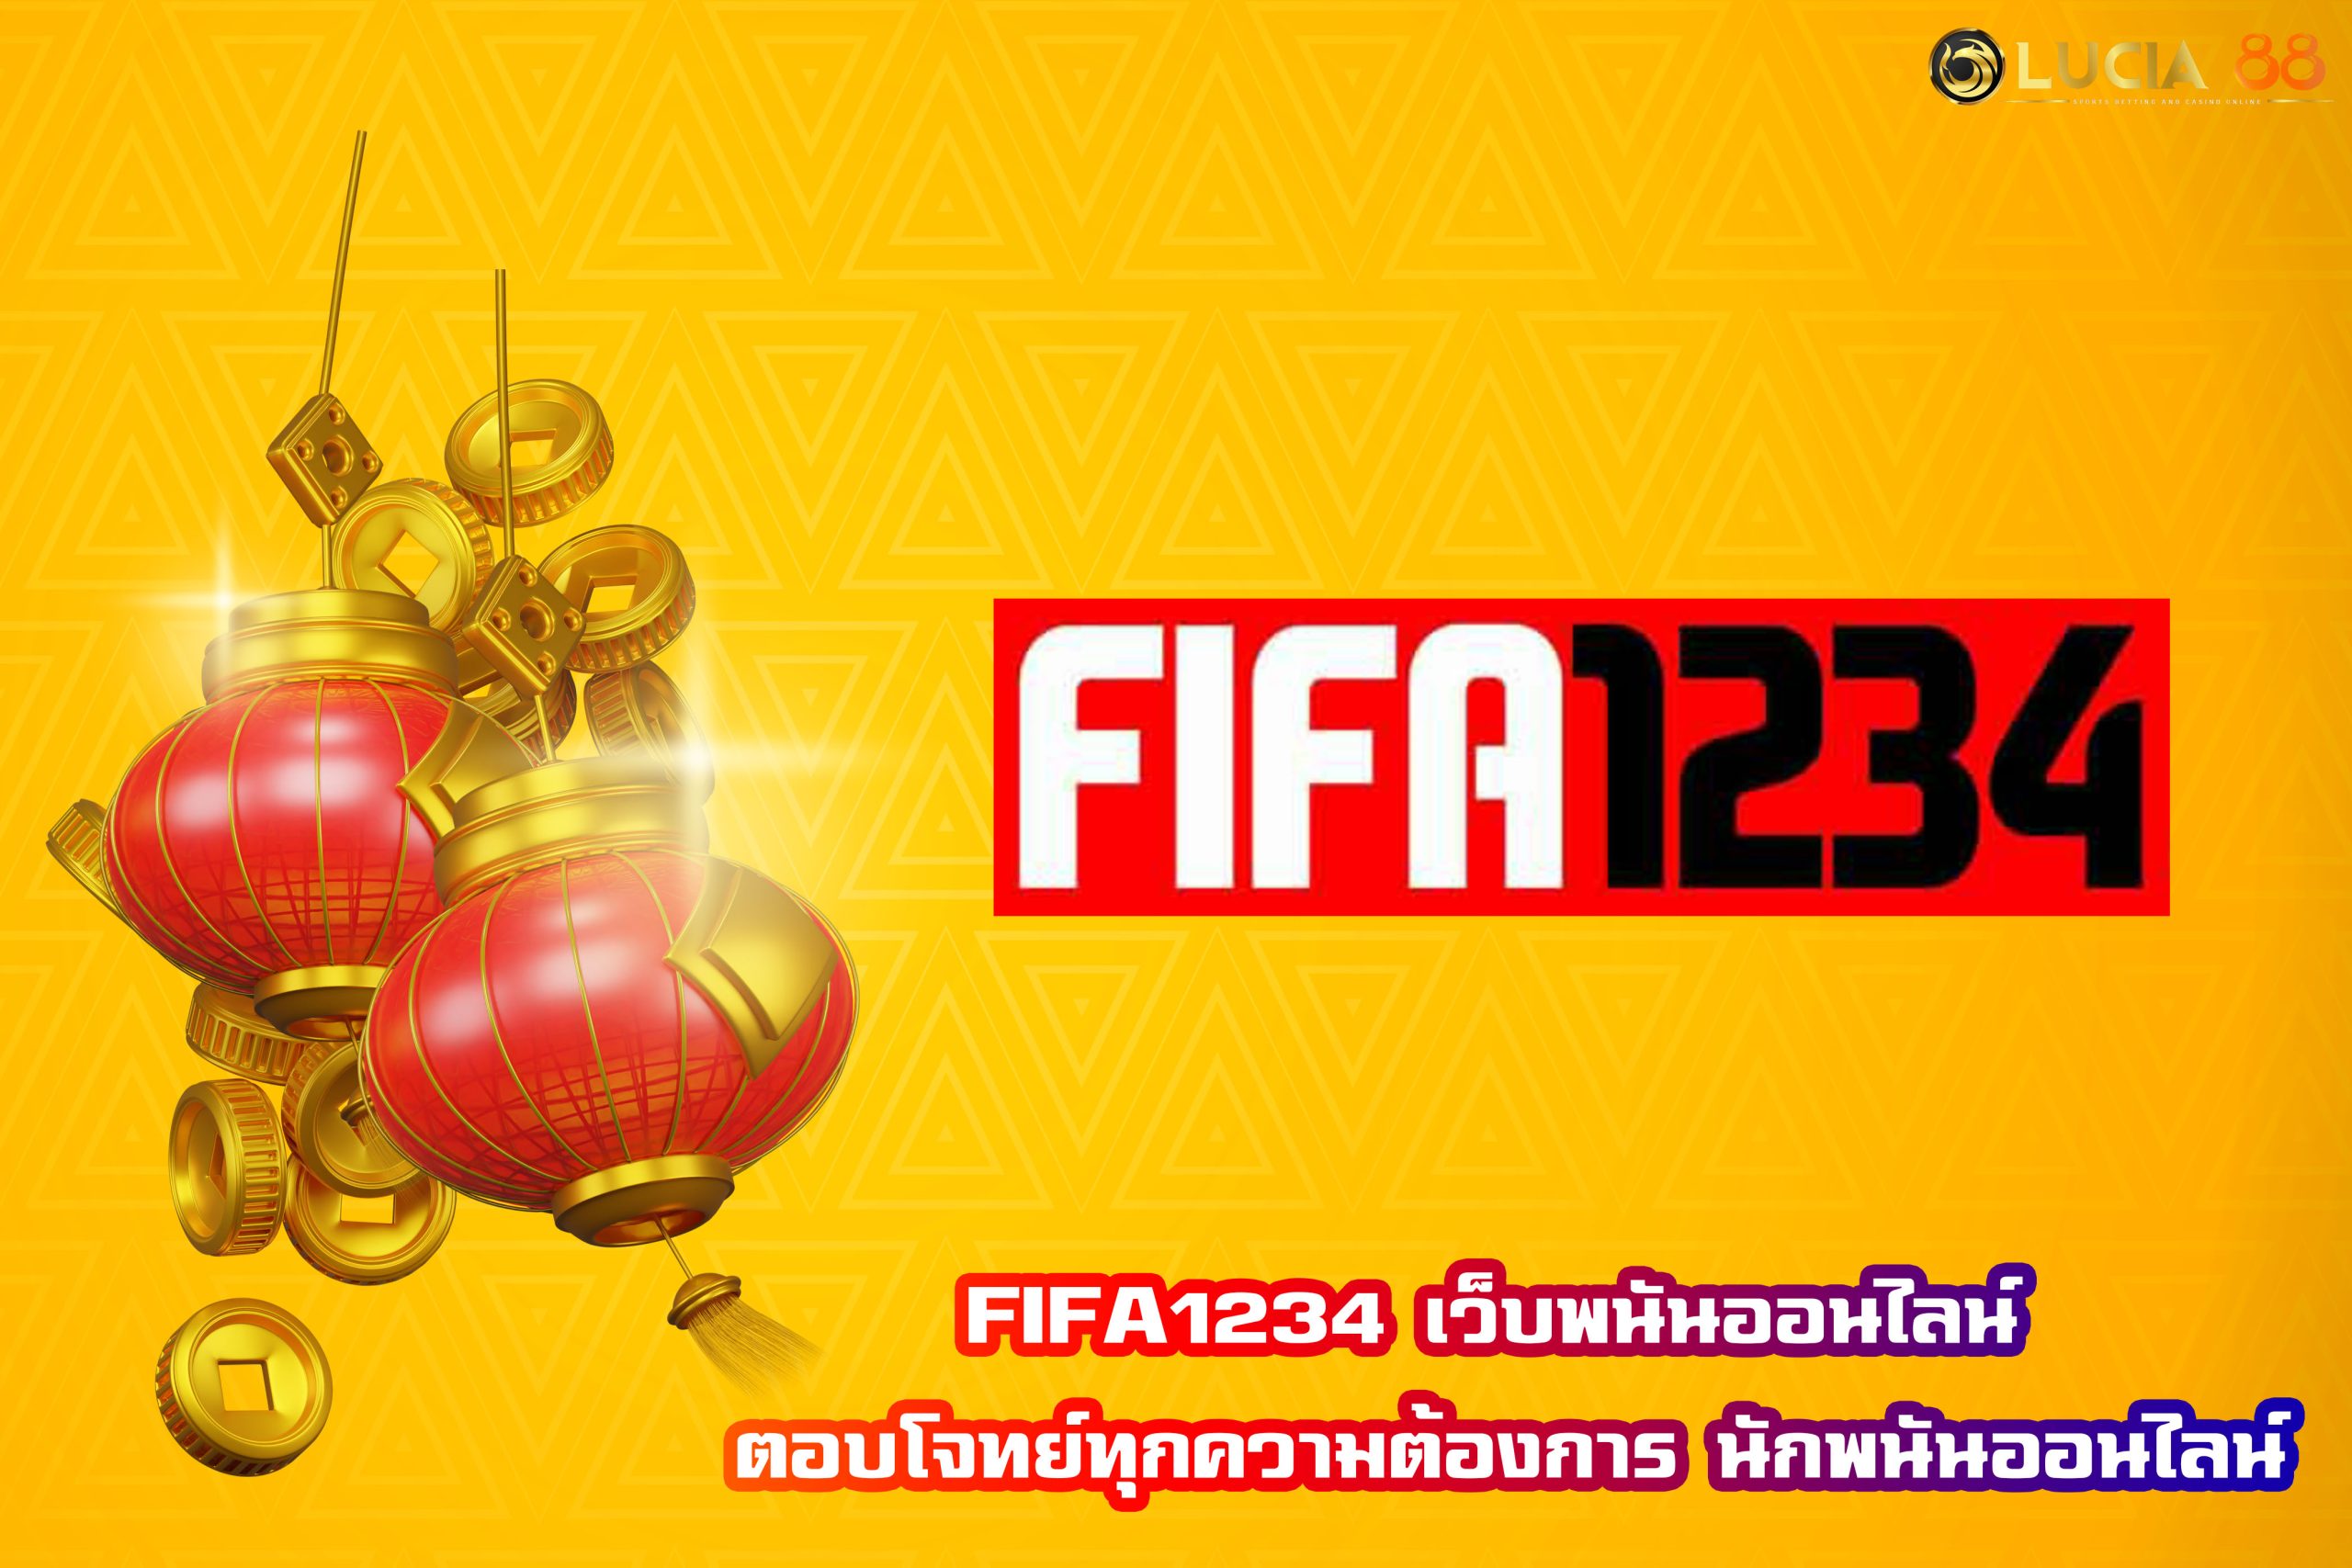 FIFA1234 เว็บพนันออนไลน์ ตอบโจทย์ทุกความต้องการ นักพนันออนไลน์